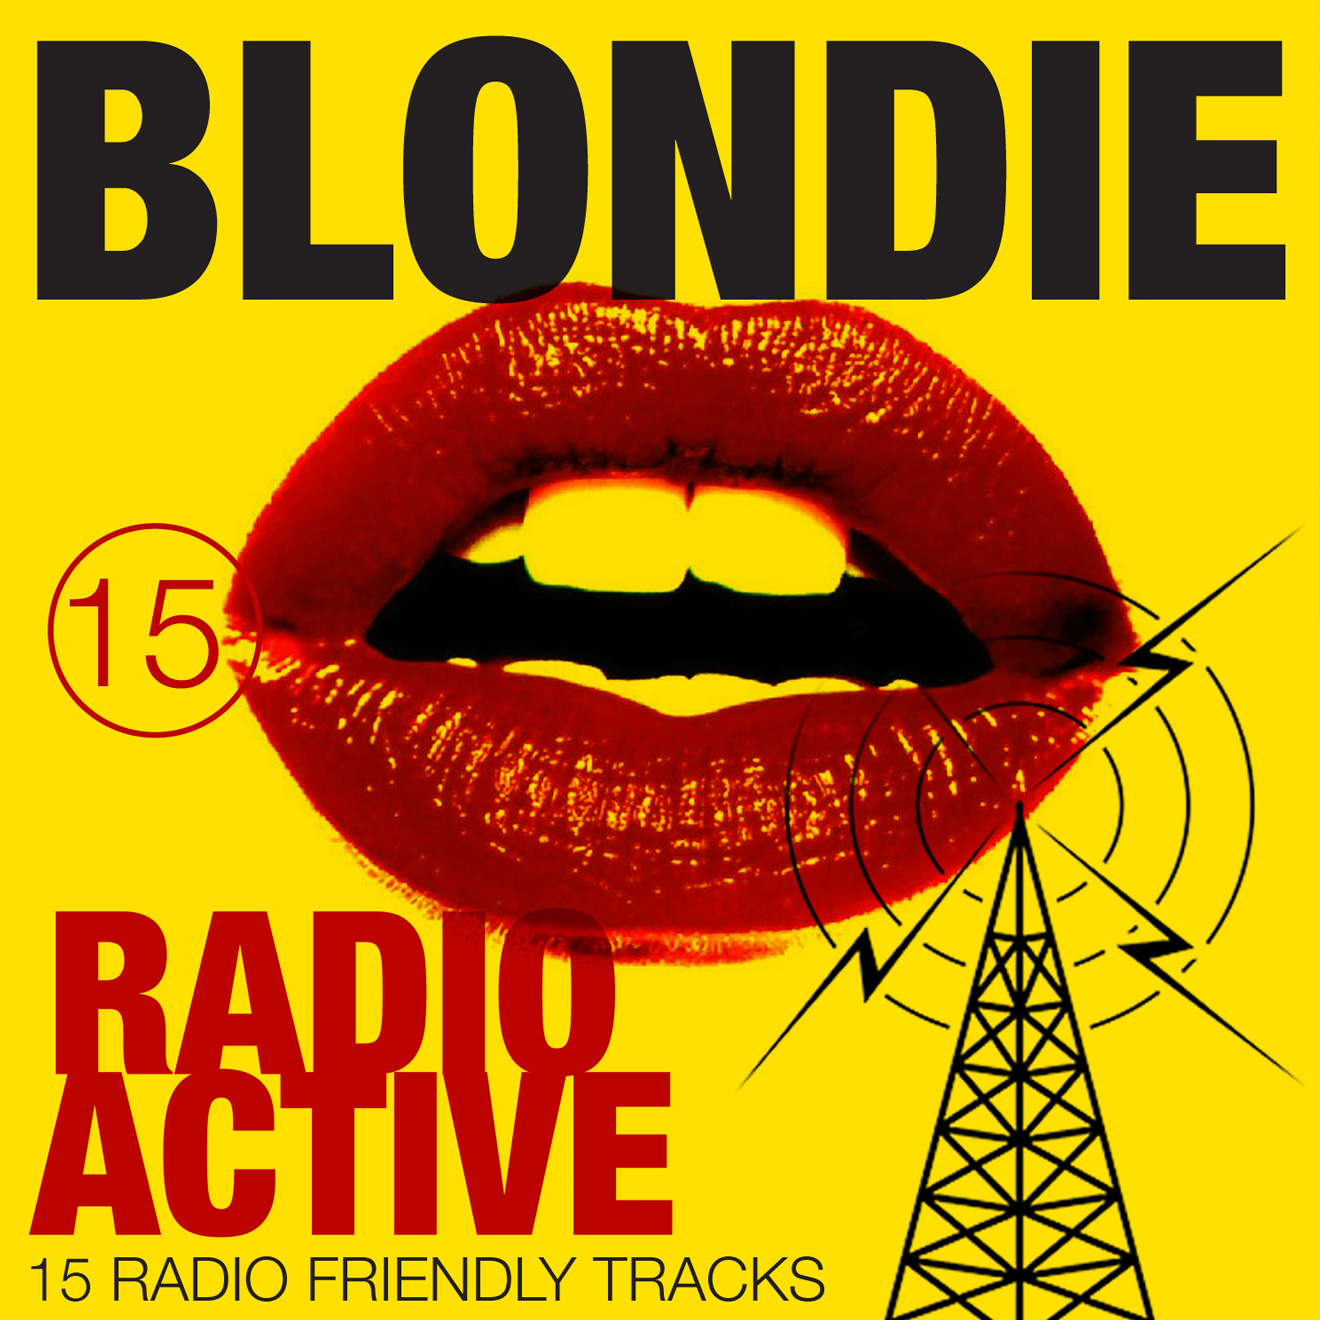 Blondie album cover design